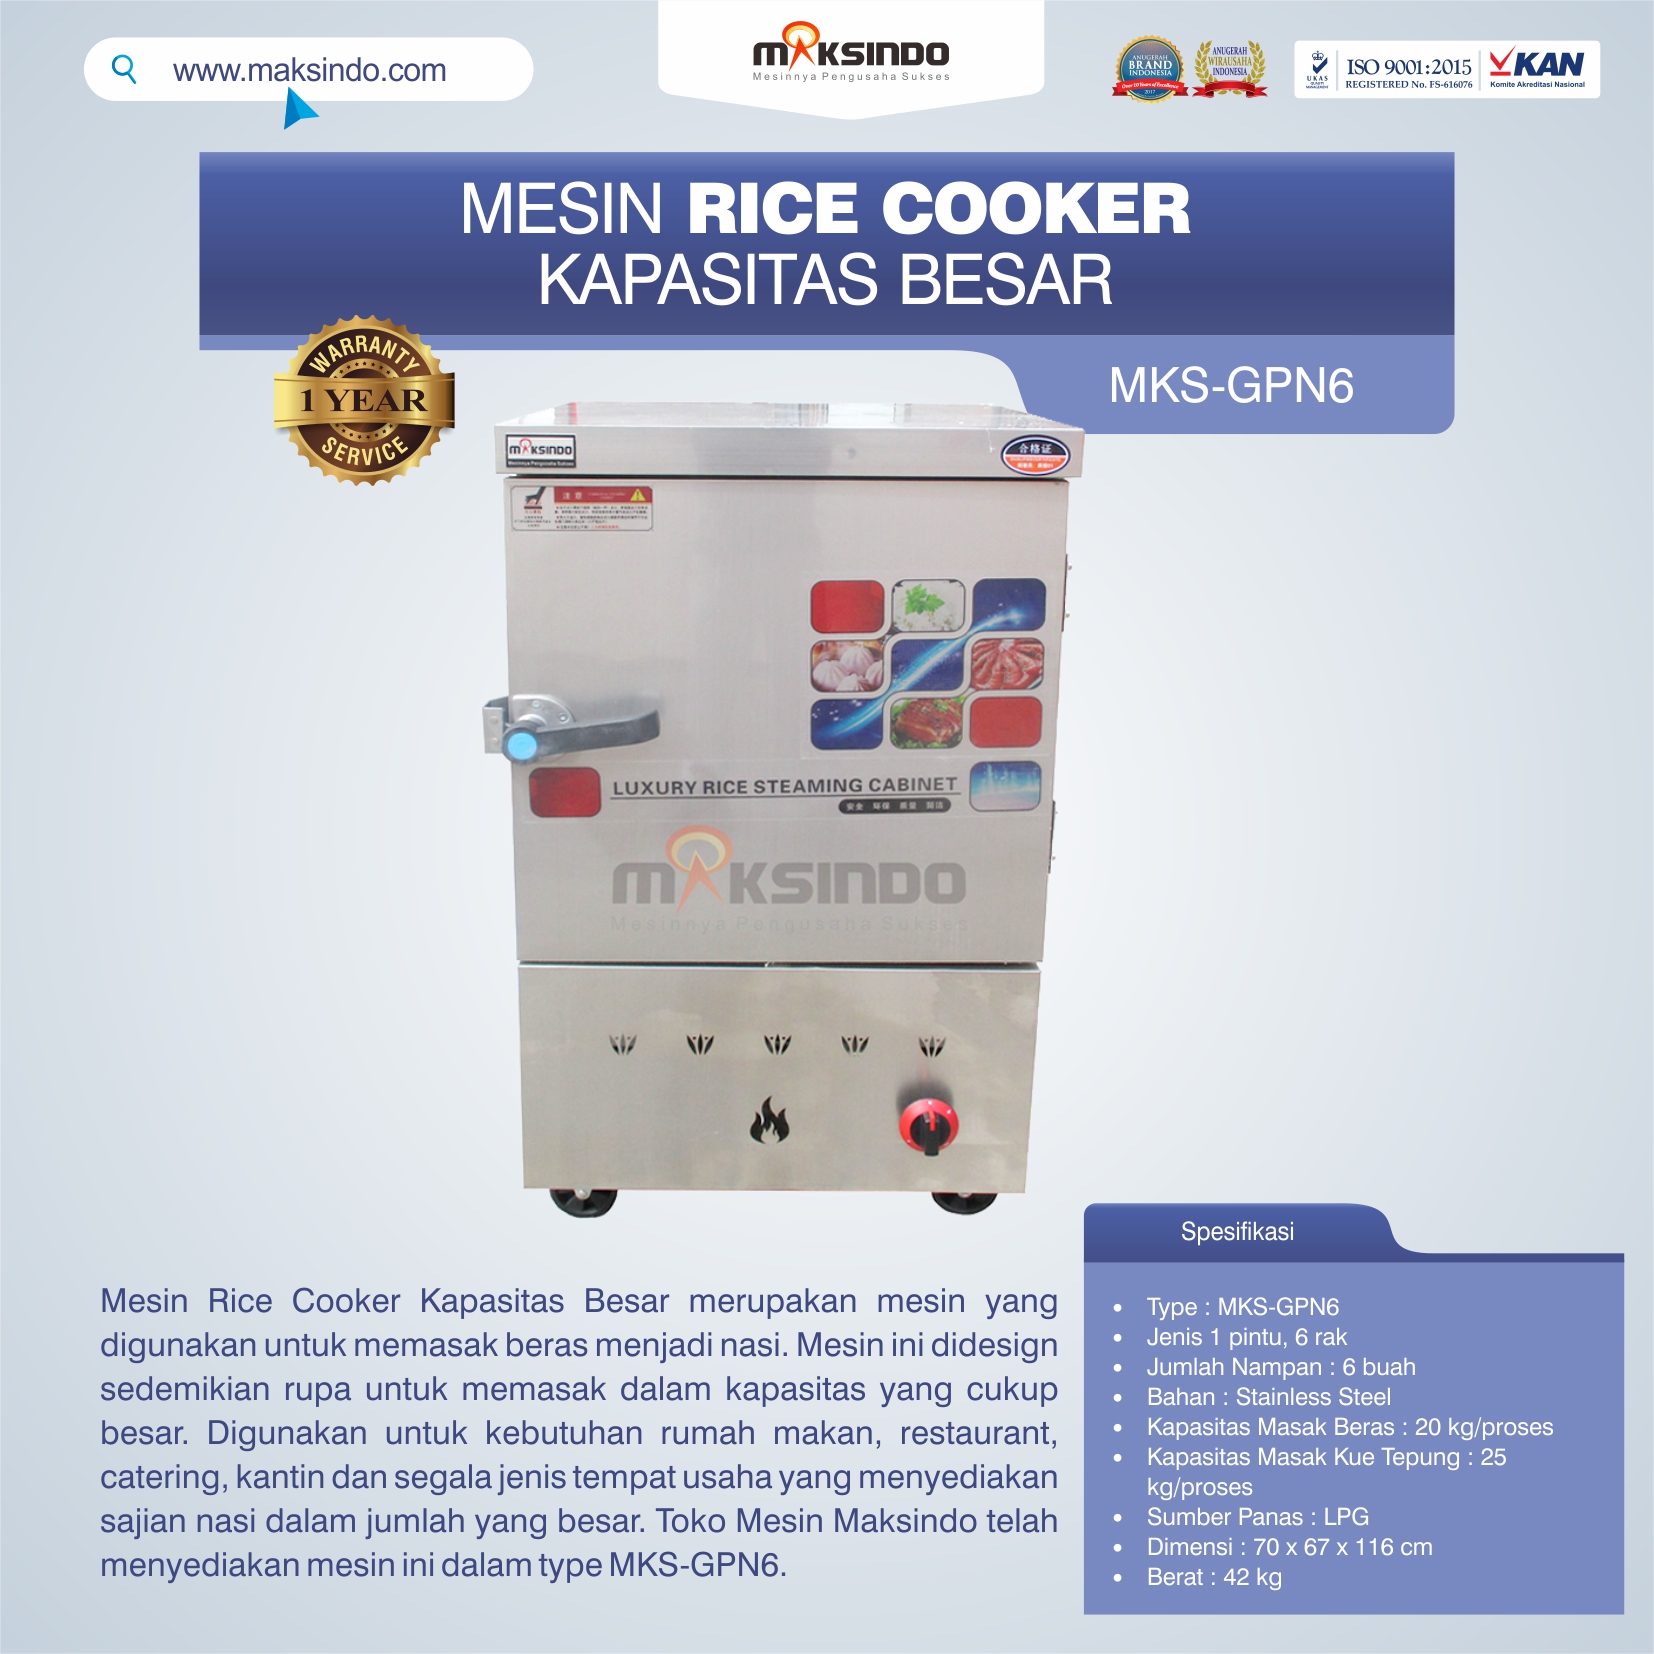 Jual Mesin Rice Cooker Kapasitas Besar MKS-GPN6 di Bali